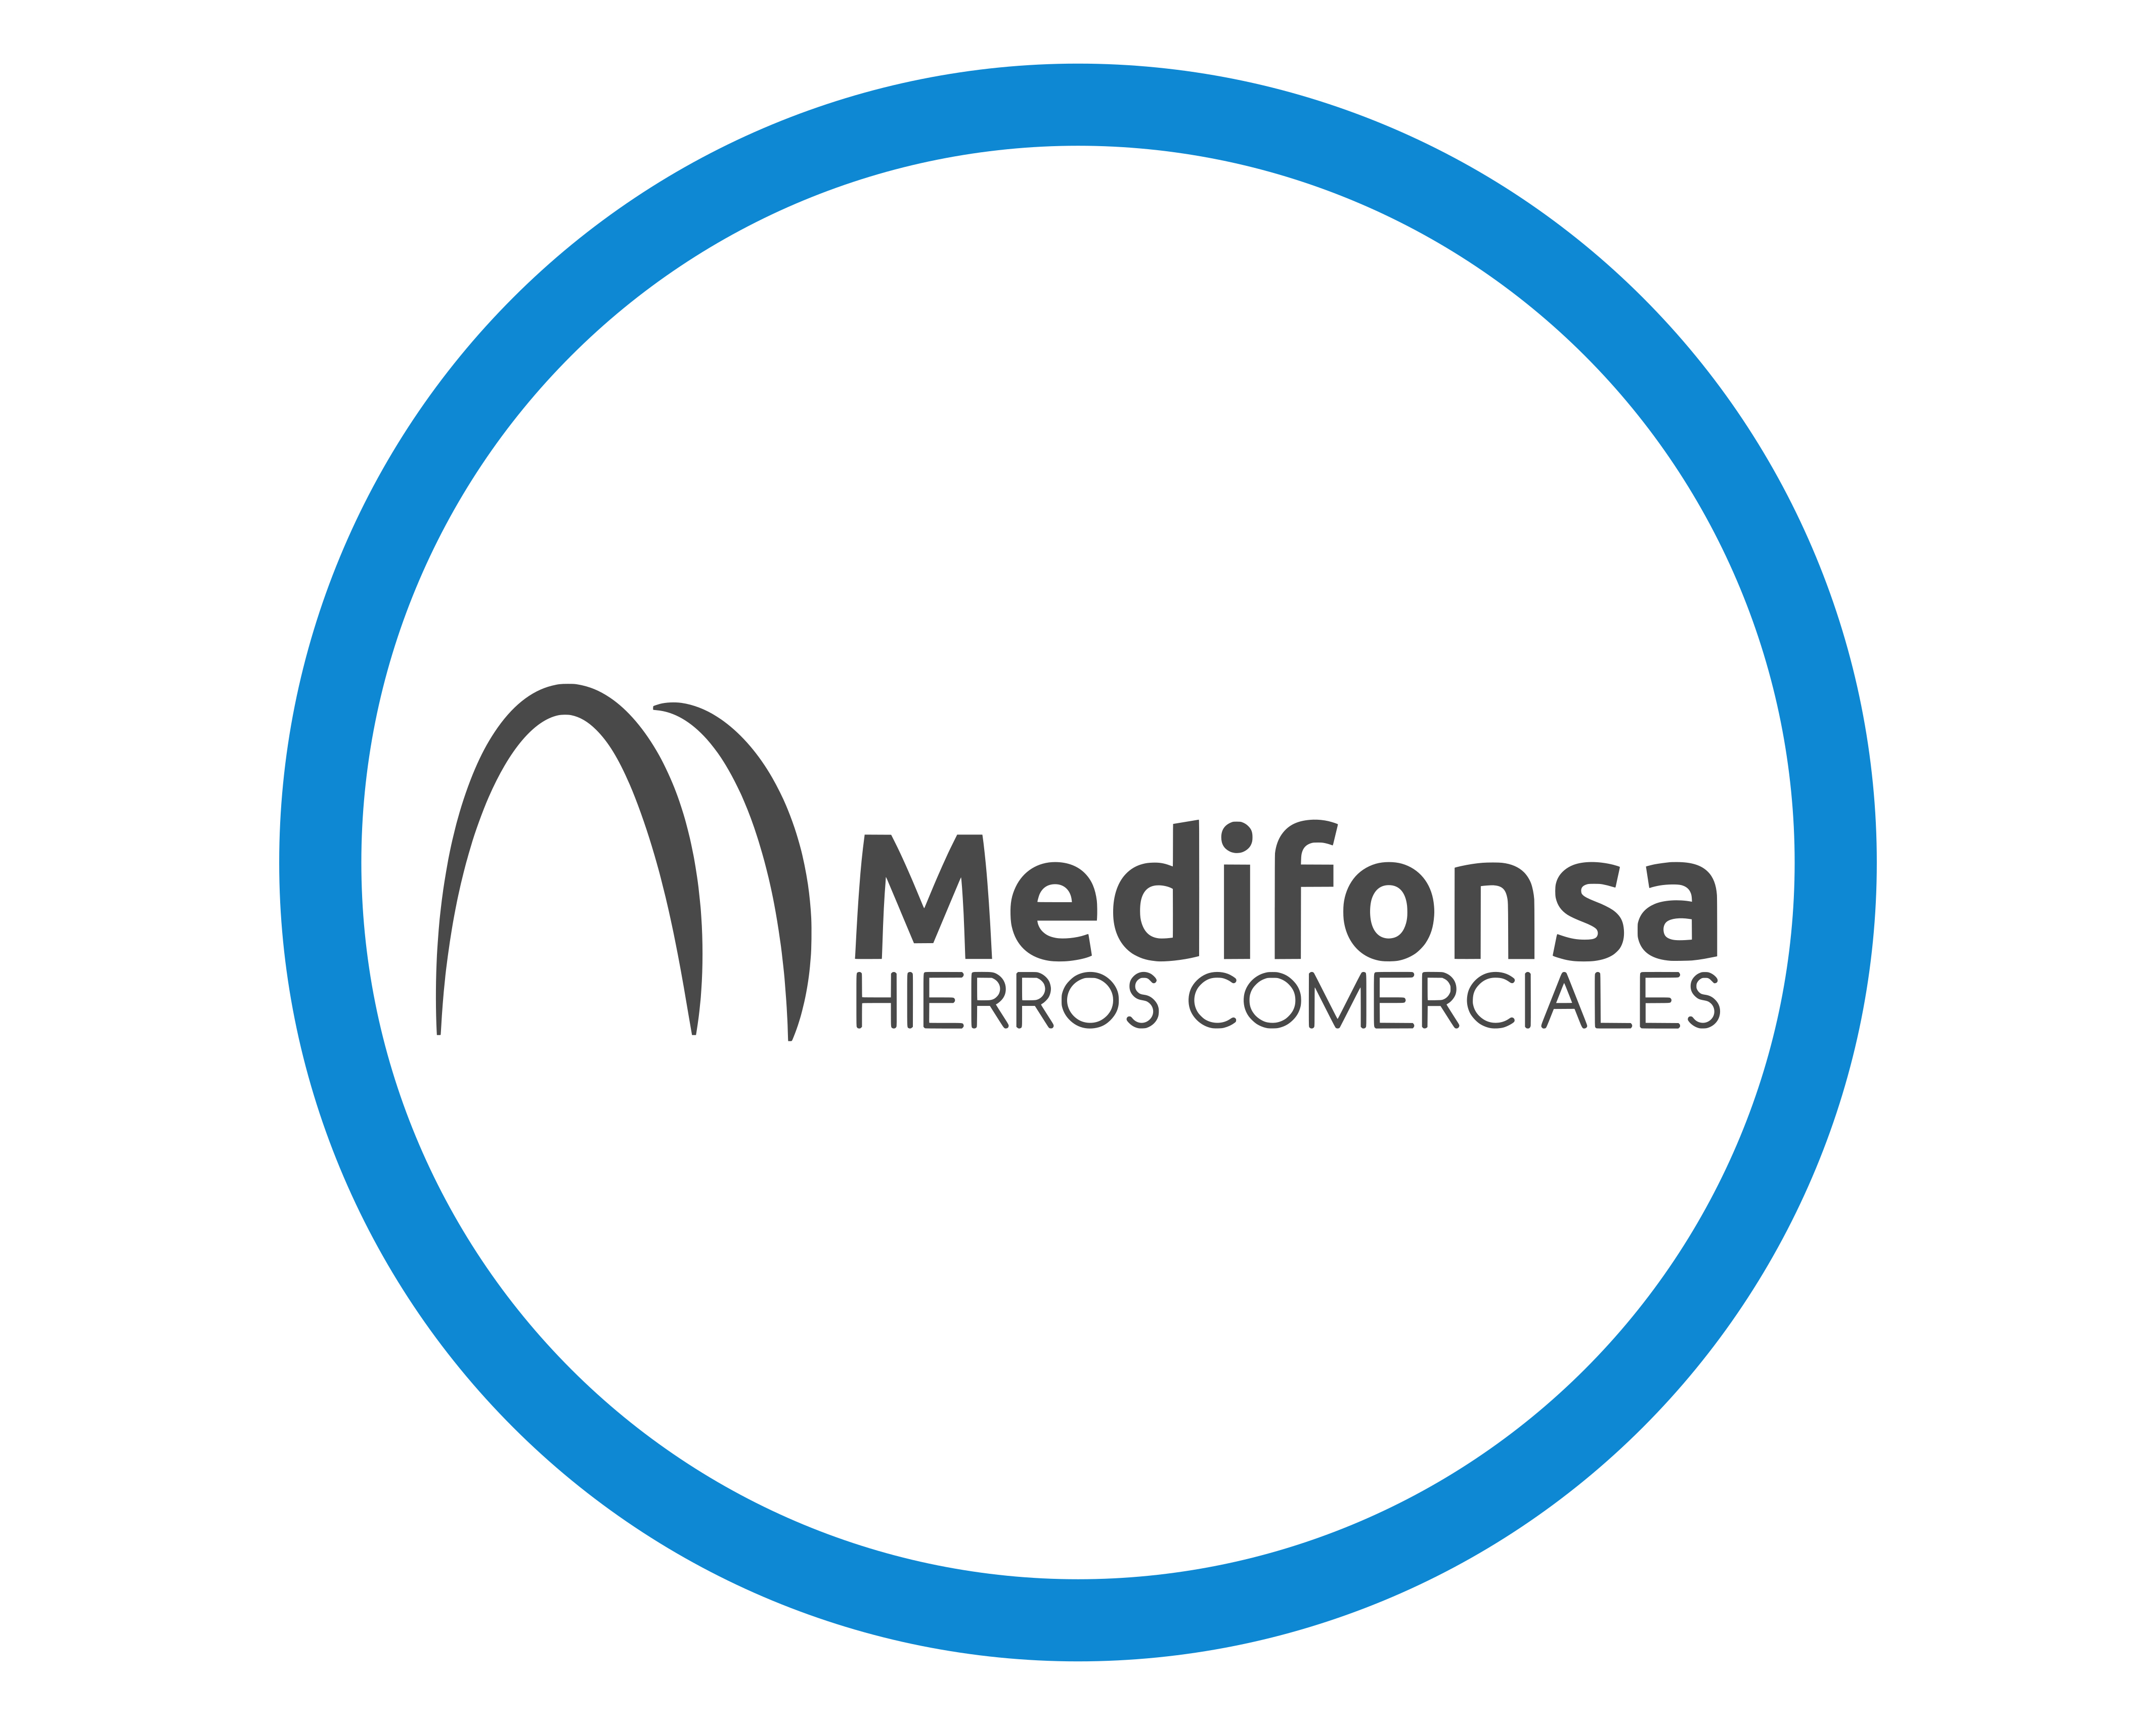 Medifonsa Hierros Comerciales